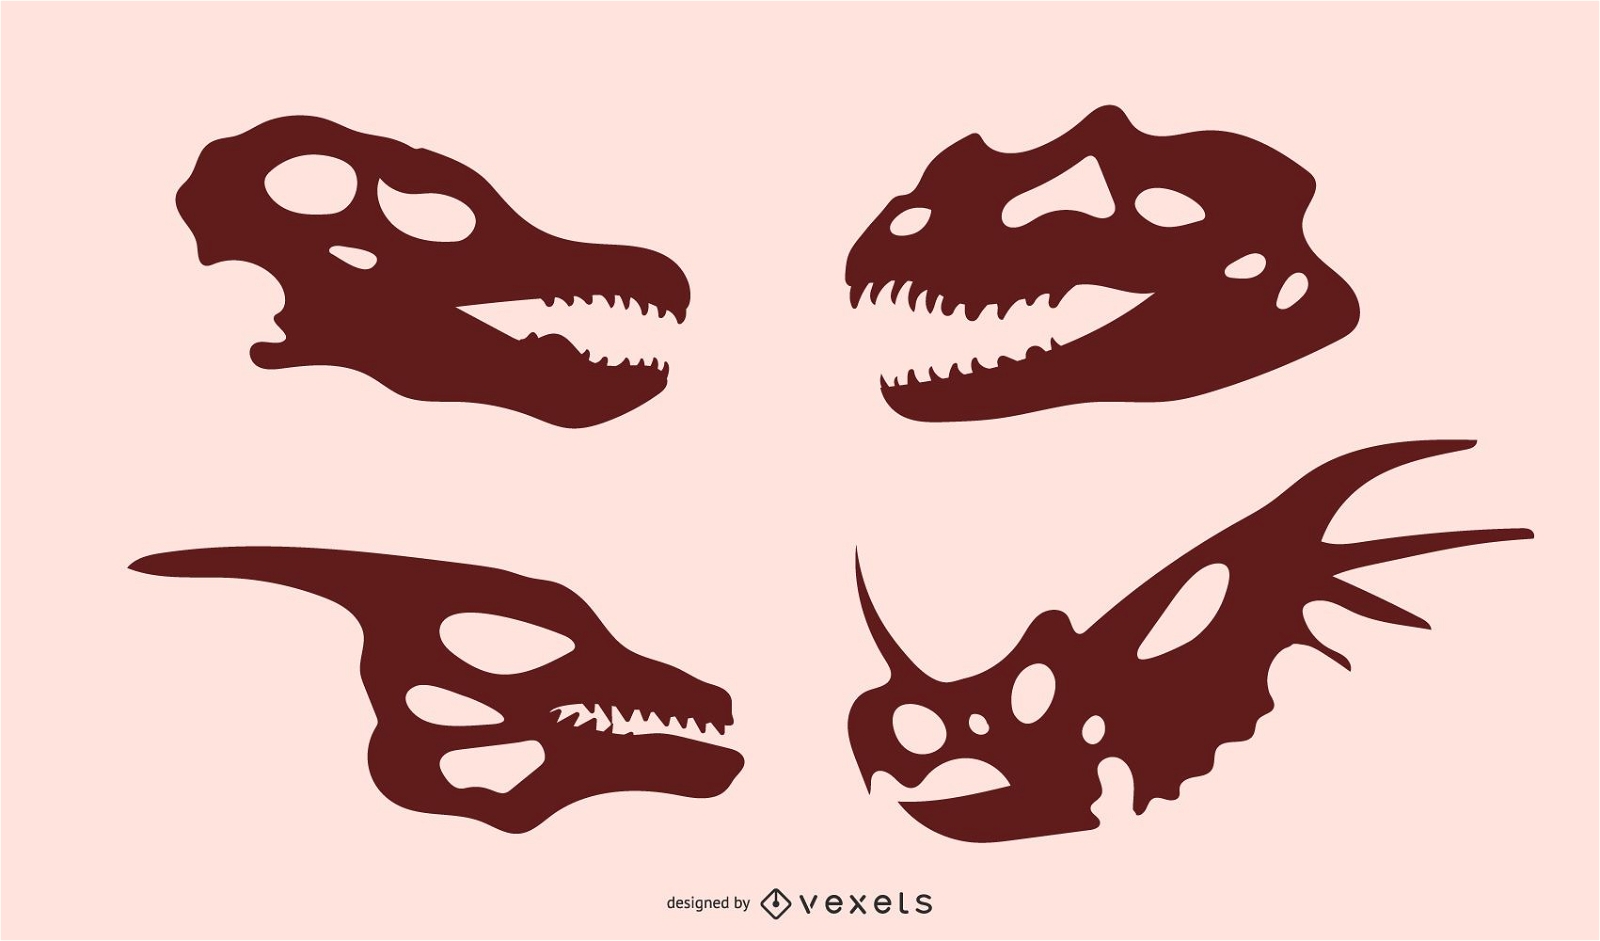 Dinosaur Skull Silhouettes 